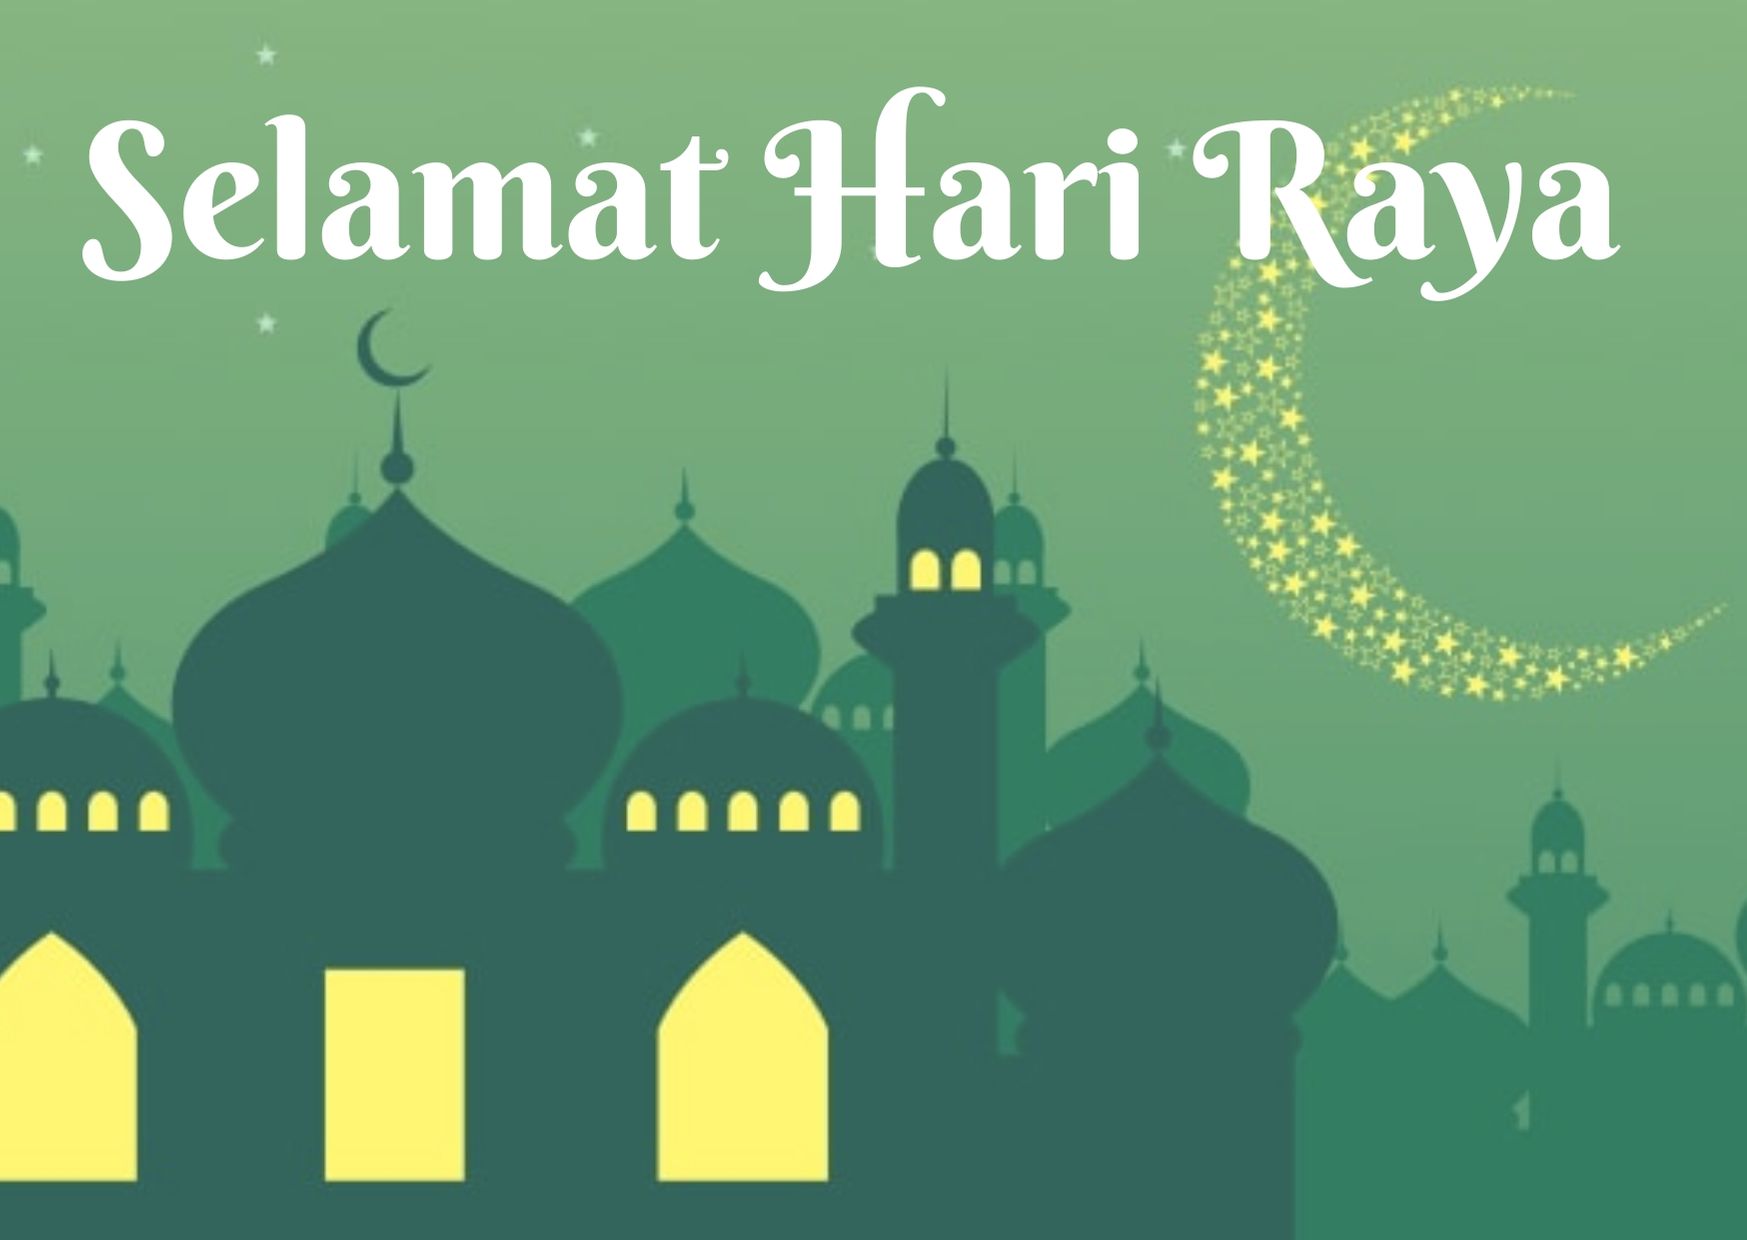 Haji raya when hari 2021 is Hari Raya